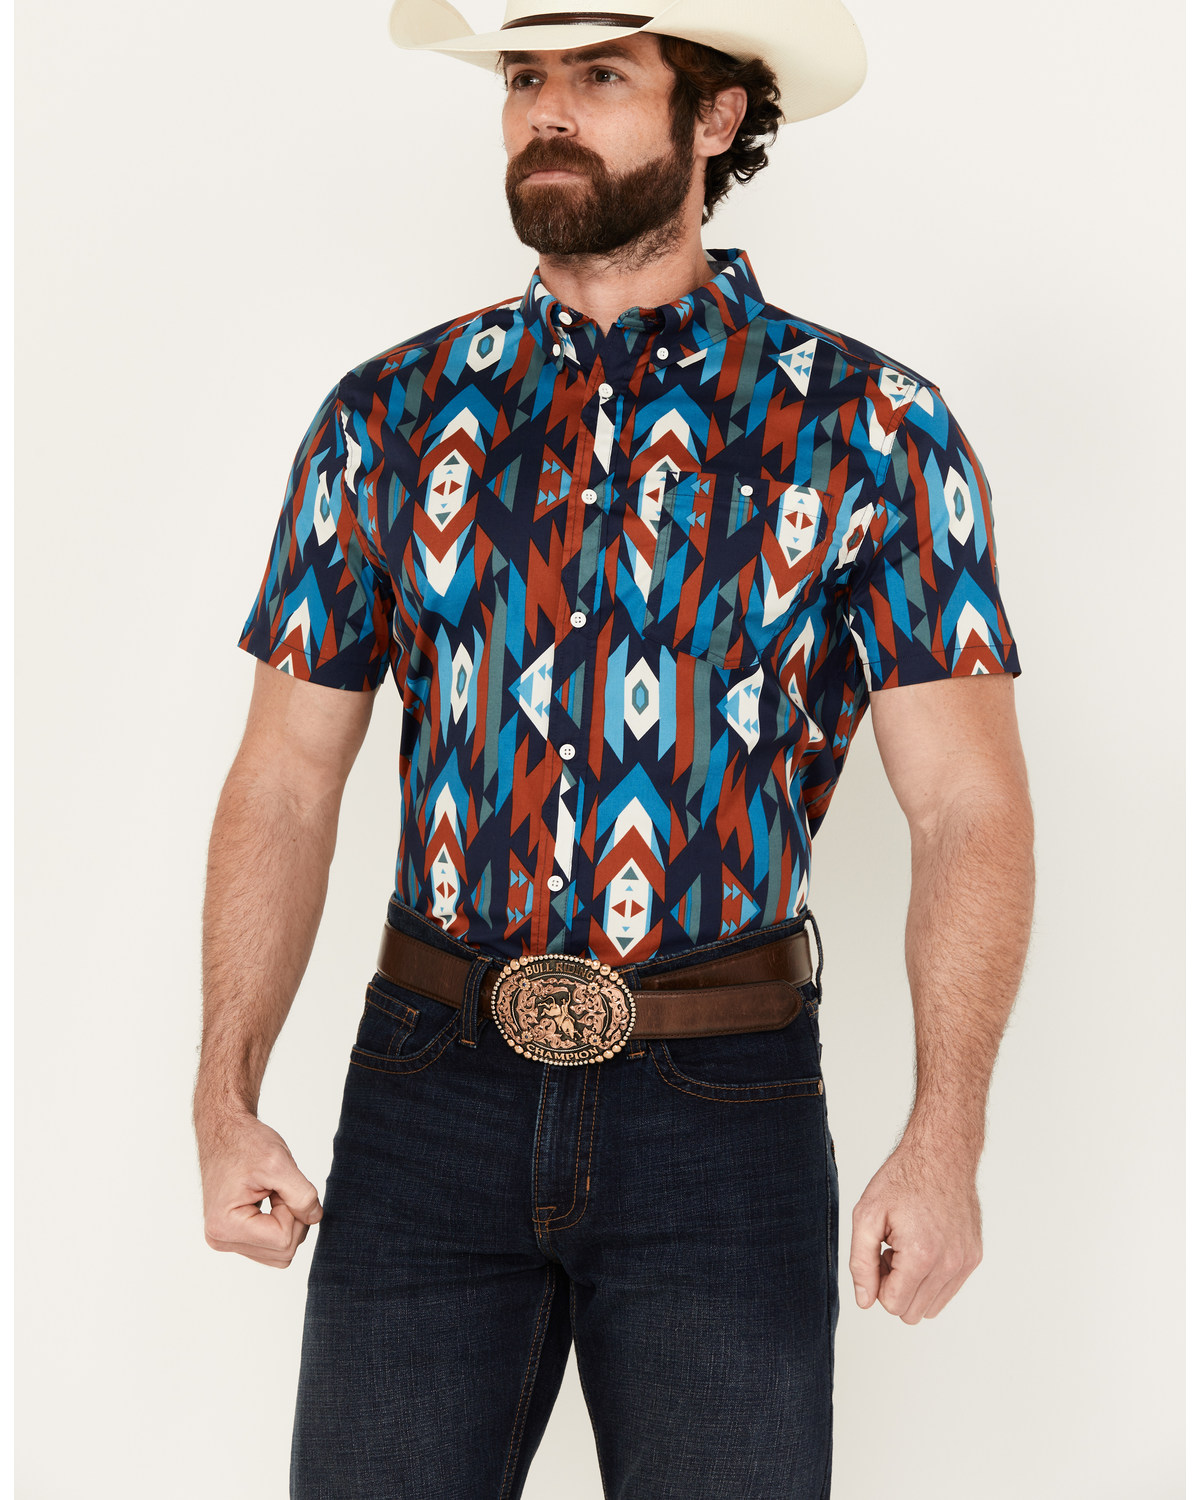 RANK 45® Men's Raflame Southwestern Print Button-Down Stretch Western Shirt